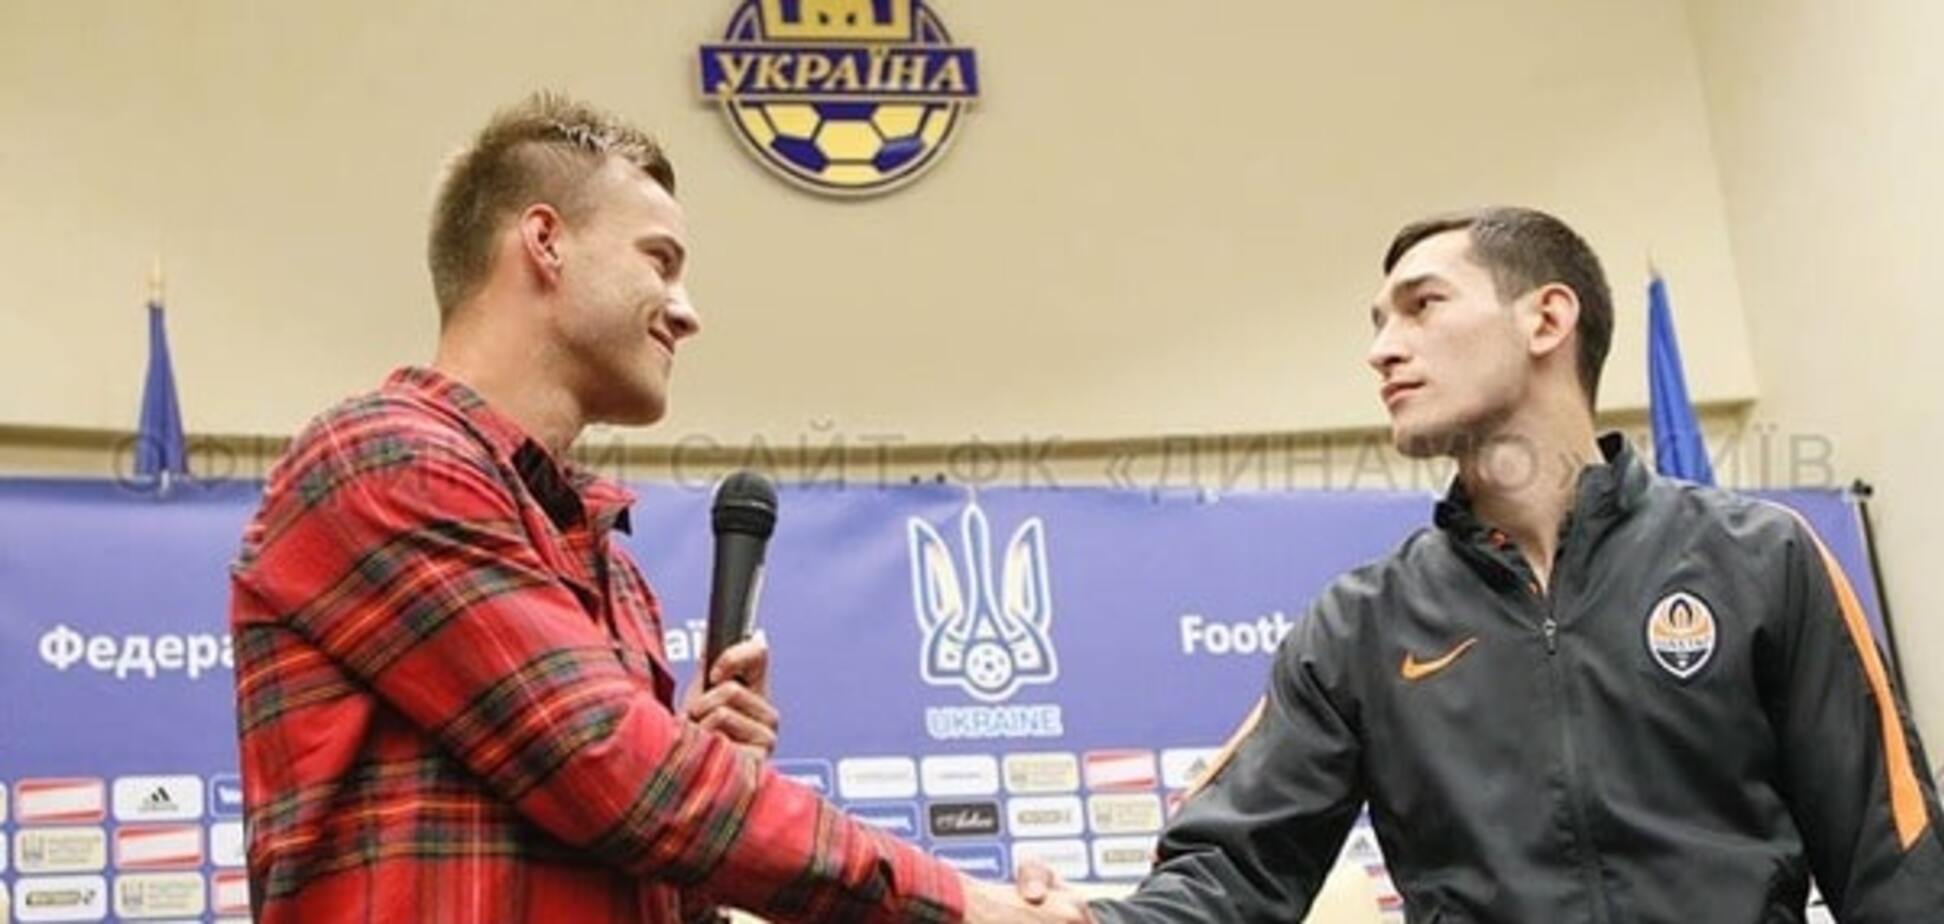 Степаненко і Ярмоленко вперше зустрілися після скандалу під час матчу 'Шахтар' - 'Динамо'